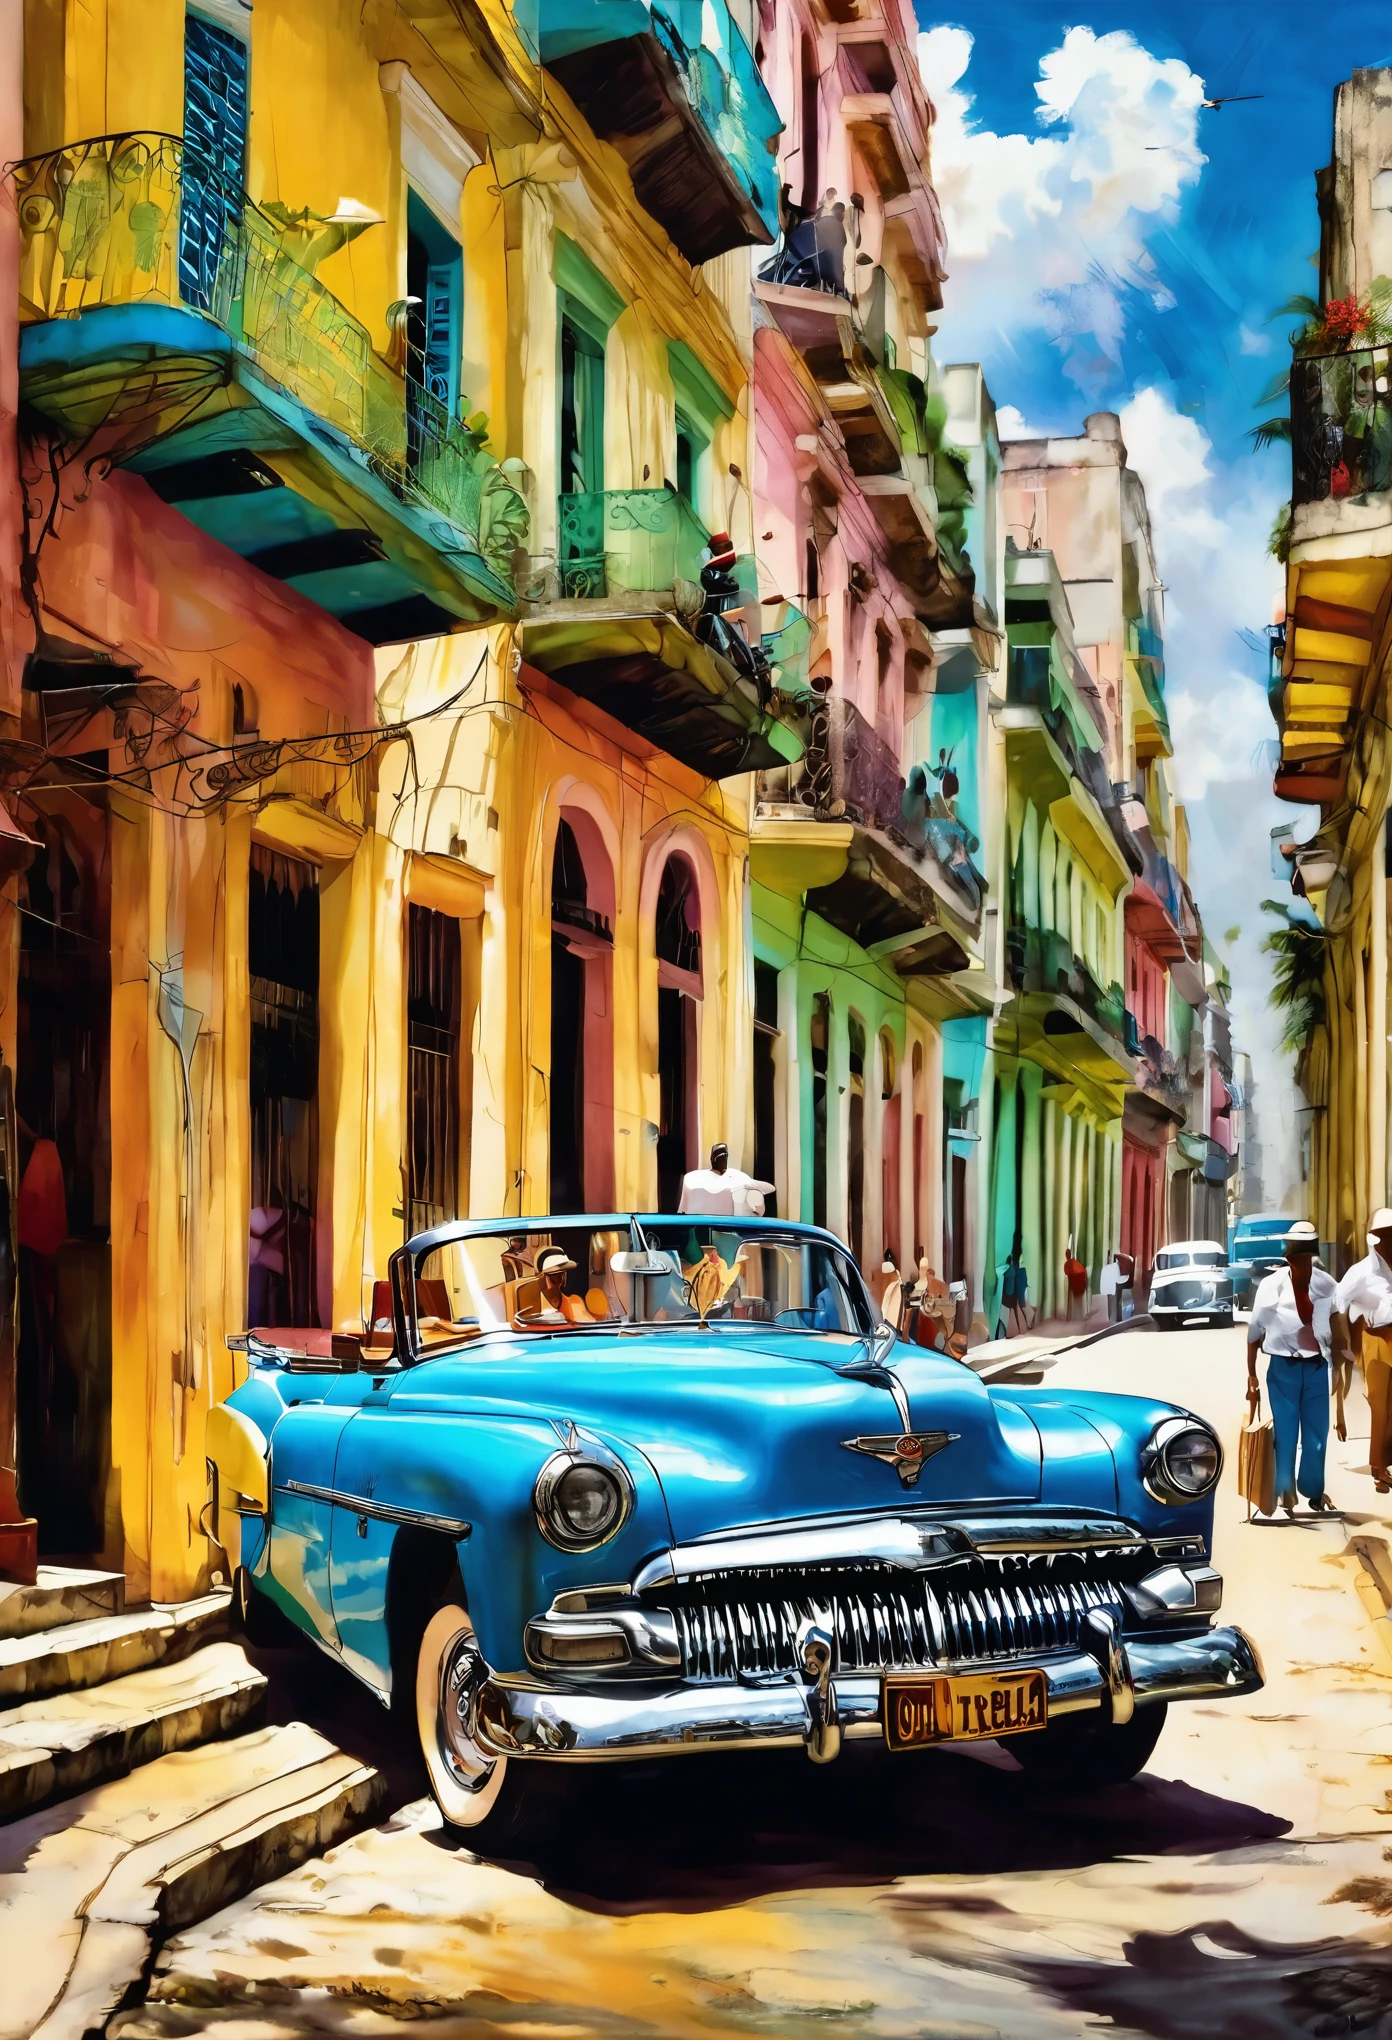 (Effet Tyndall Art de Cuba Art de La Havane Toile d&#39;art cubaine Impression de La Havane La Havane:1.5), par Piotr Jabonski,(( belle vue arrière de voiture vintage:1.5, en arrière-plan, tables et chaises de bar colombiennes avec des gens, chaleur, ambiance joyeuse)), vu de derrière, face arrière, meilleure qualité, chef-d&#39;œuvre, Travail représentatif, art officiel, Professionnel, Détails ultra complexes, 8k